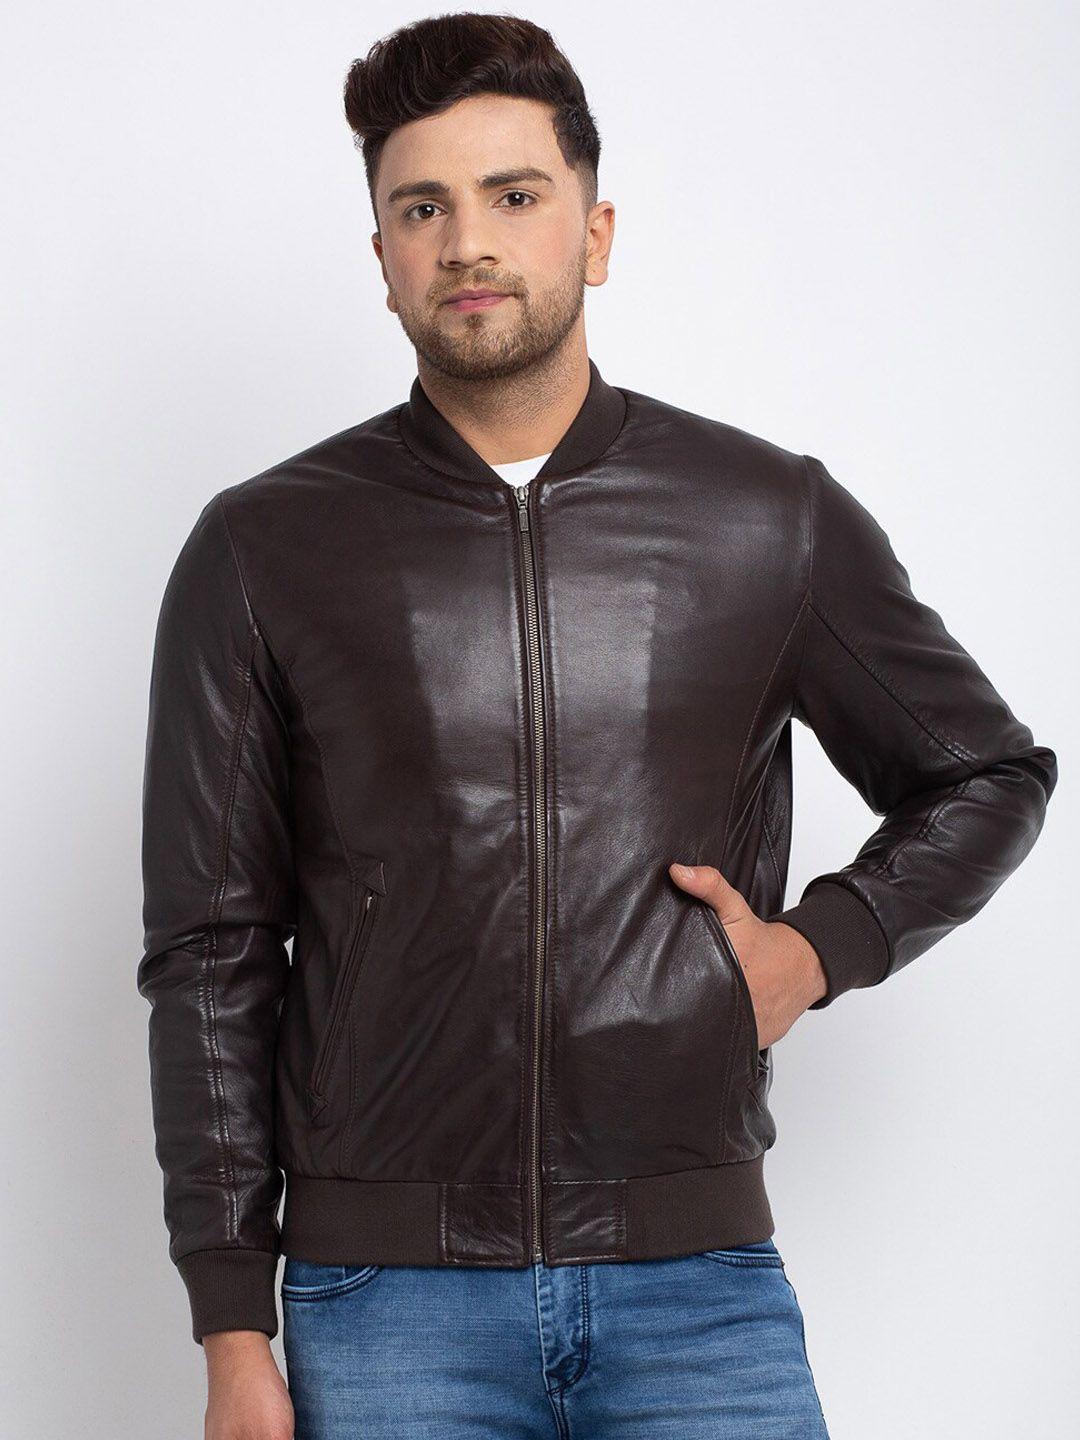 teakwood-leathers-men-brown-leather-leather-jacket